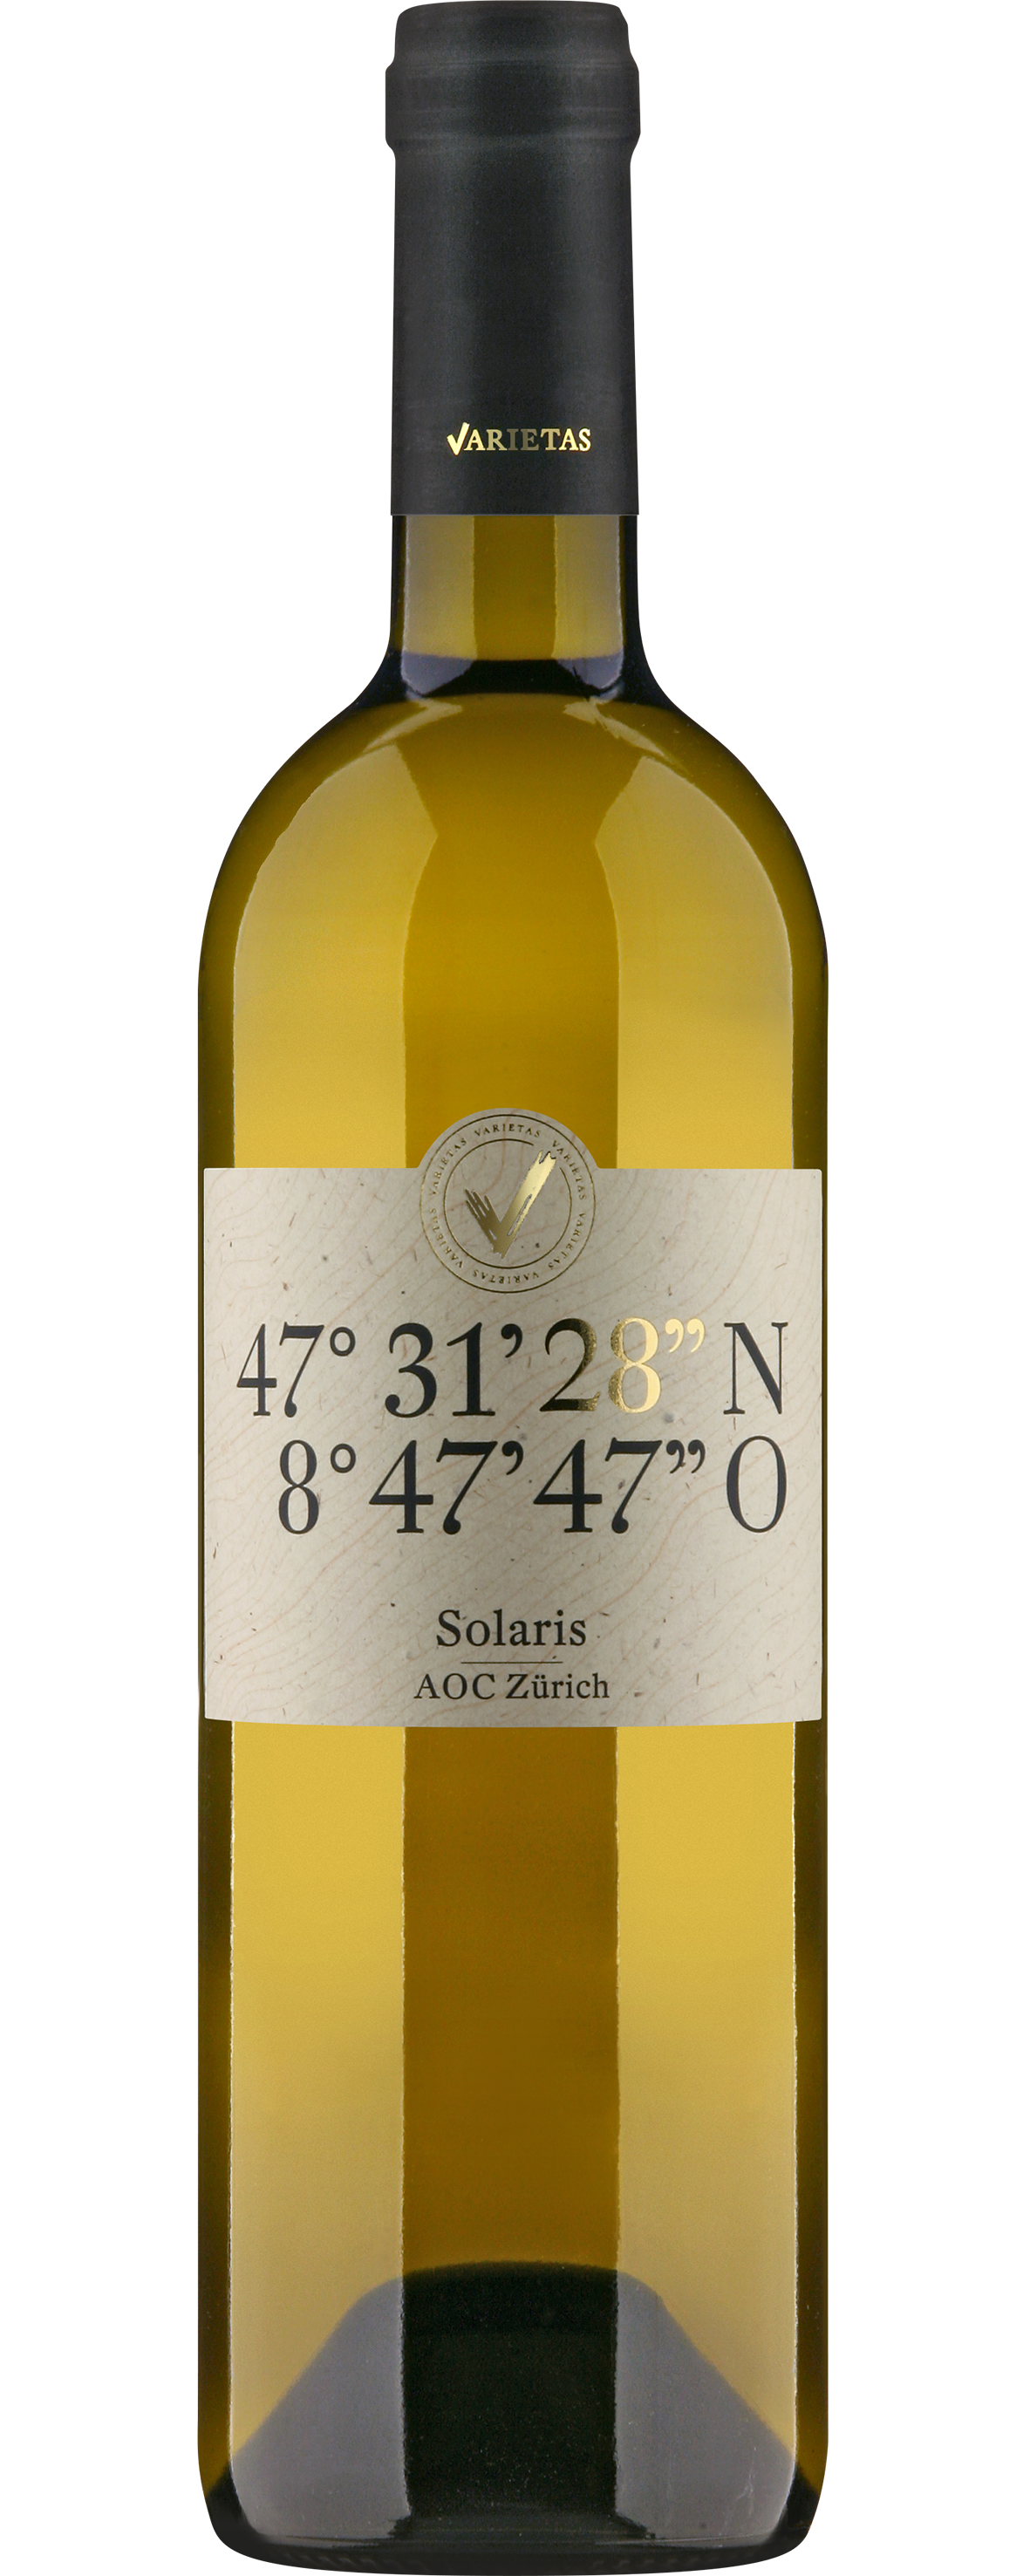 Varietas 28'' Solaris 
AOC Zürich